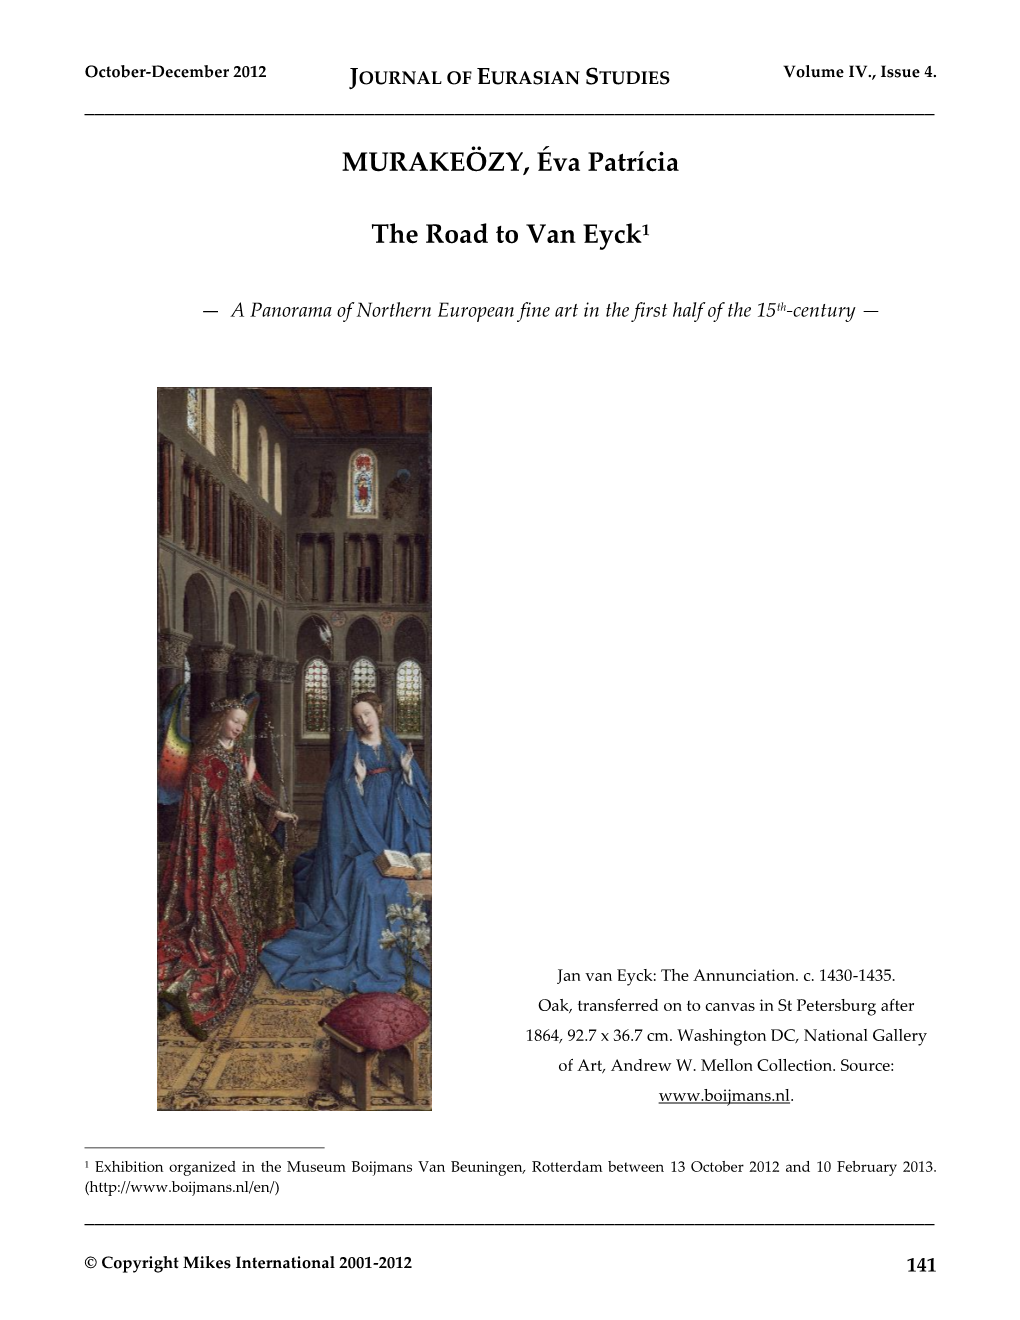 JOURNAL of EURASIAN STUDIES Volume IV., Issue 4